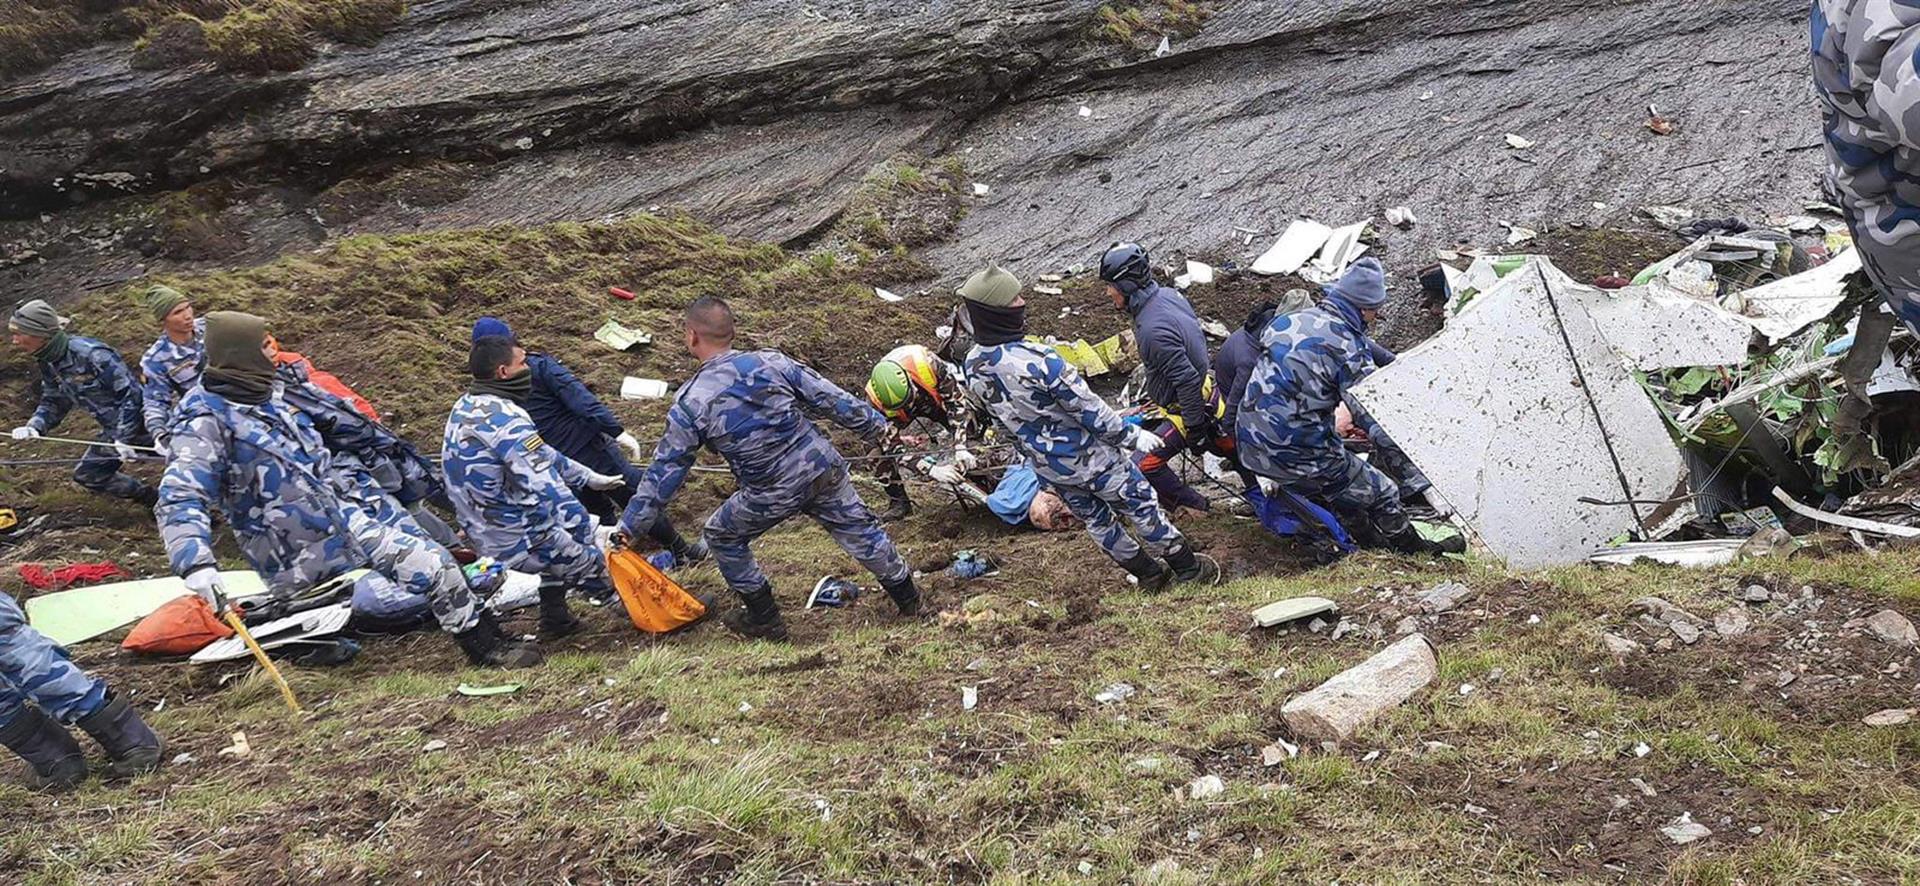 Hallan 14 cadáveres entre los restos del avión estrellado en Nepal